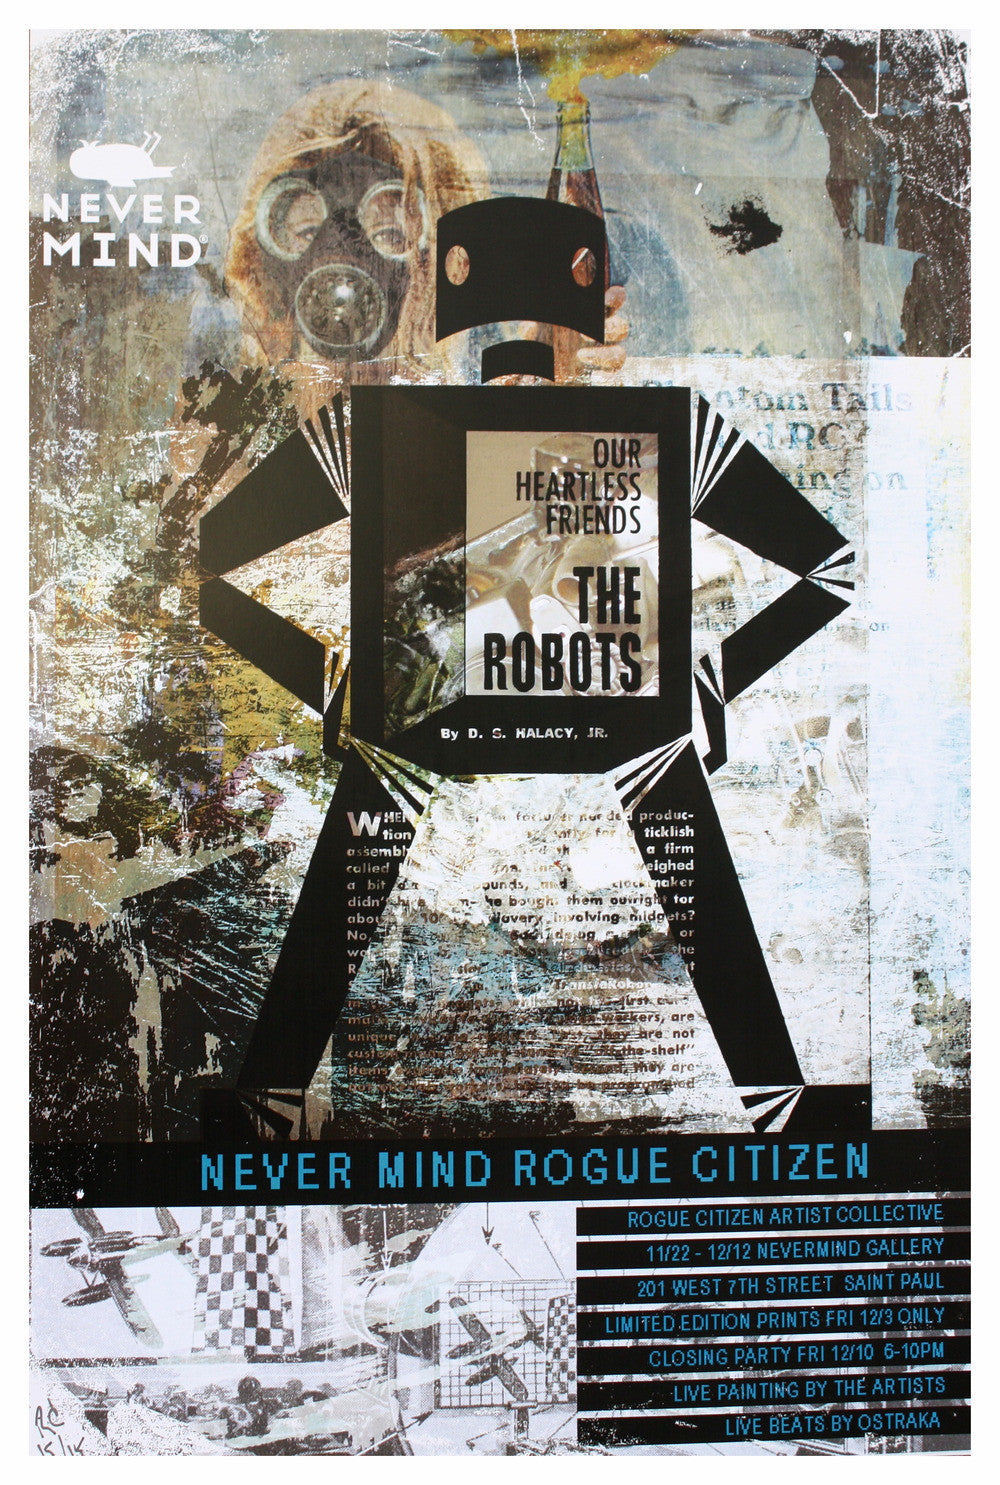 Rogue Citizen - Nevermind Rogue Citizen Art Show - Print - 2010